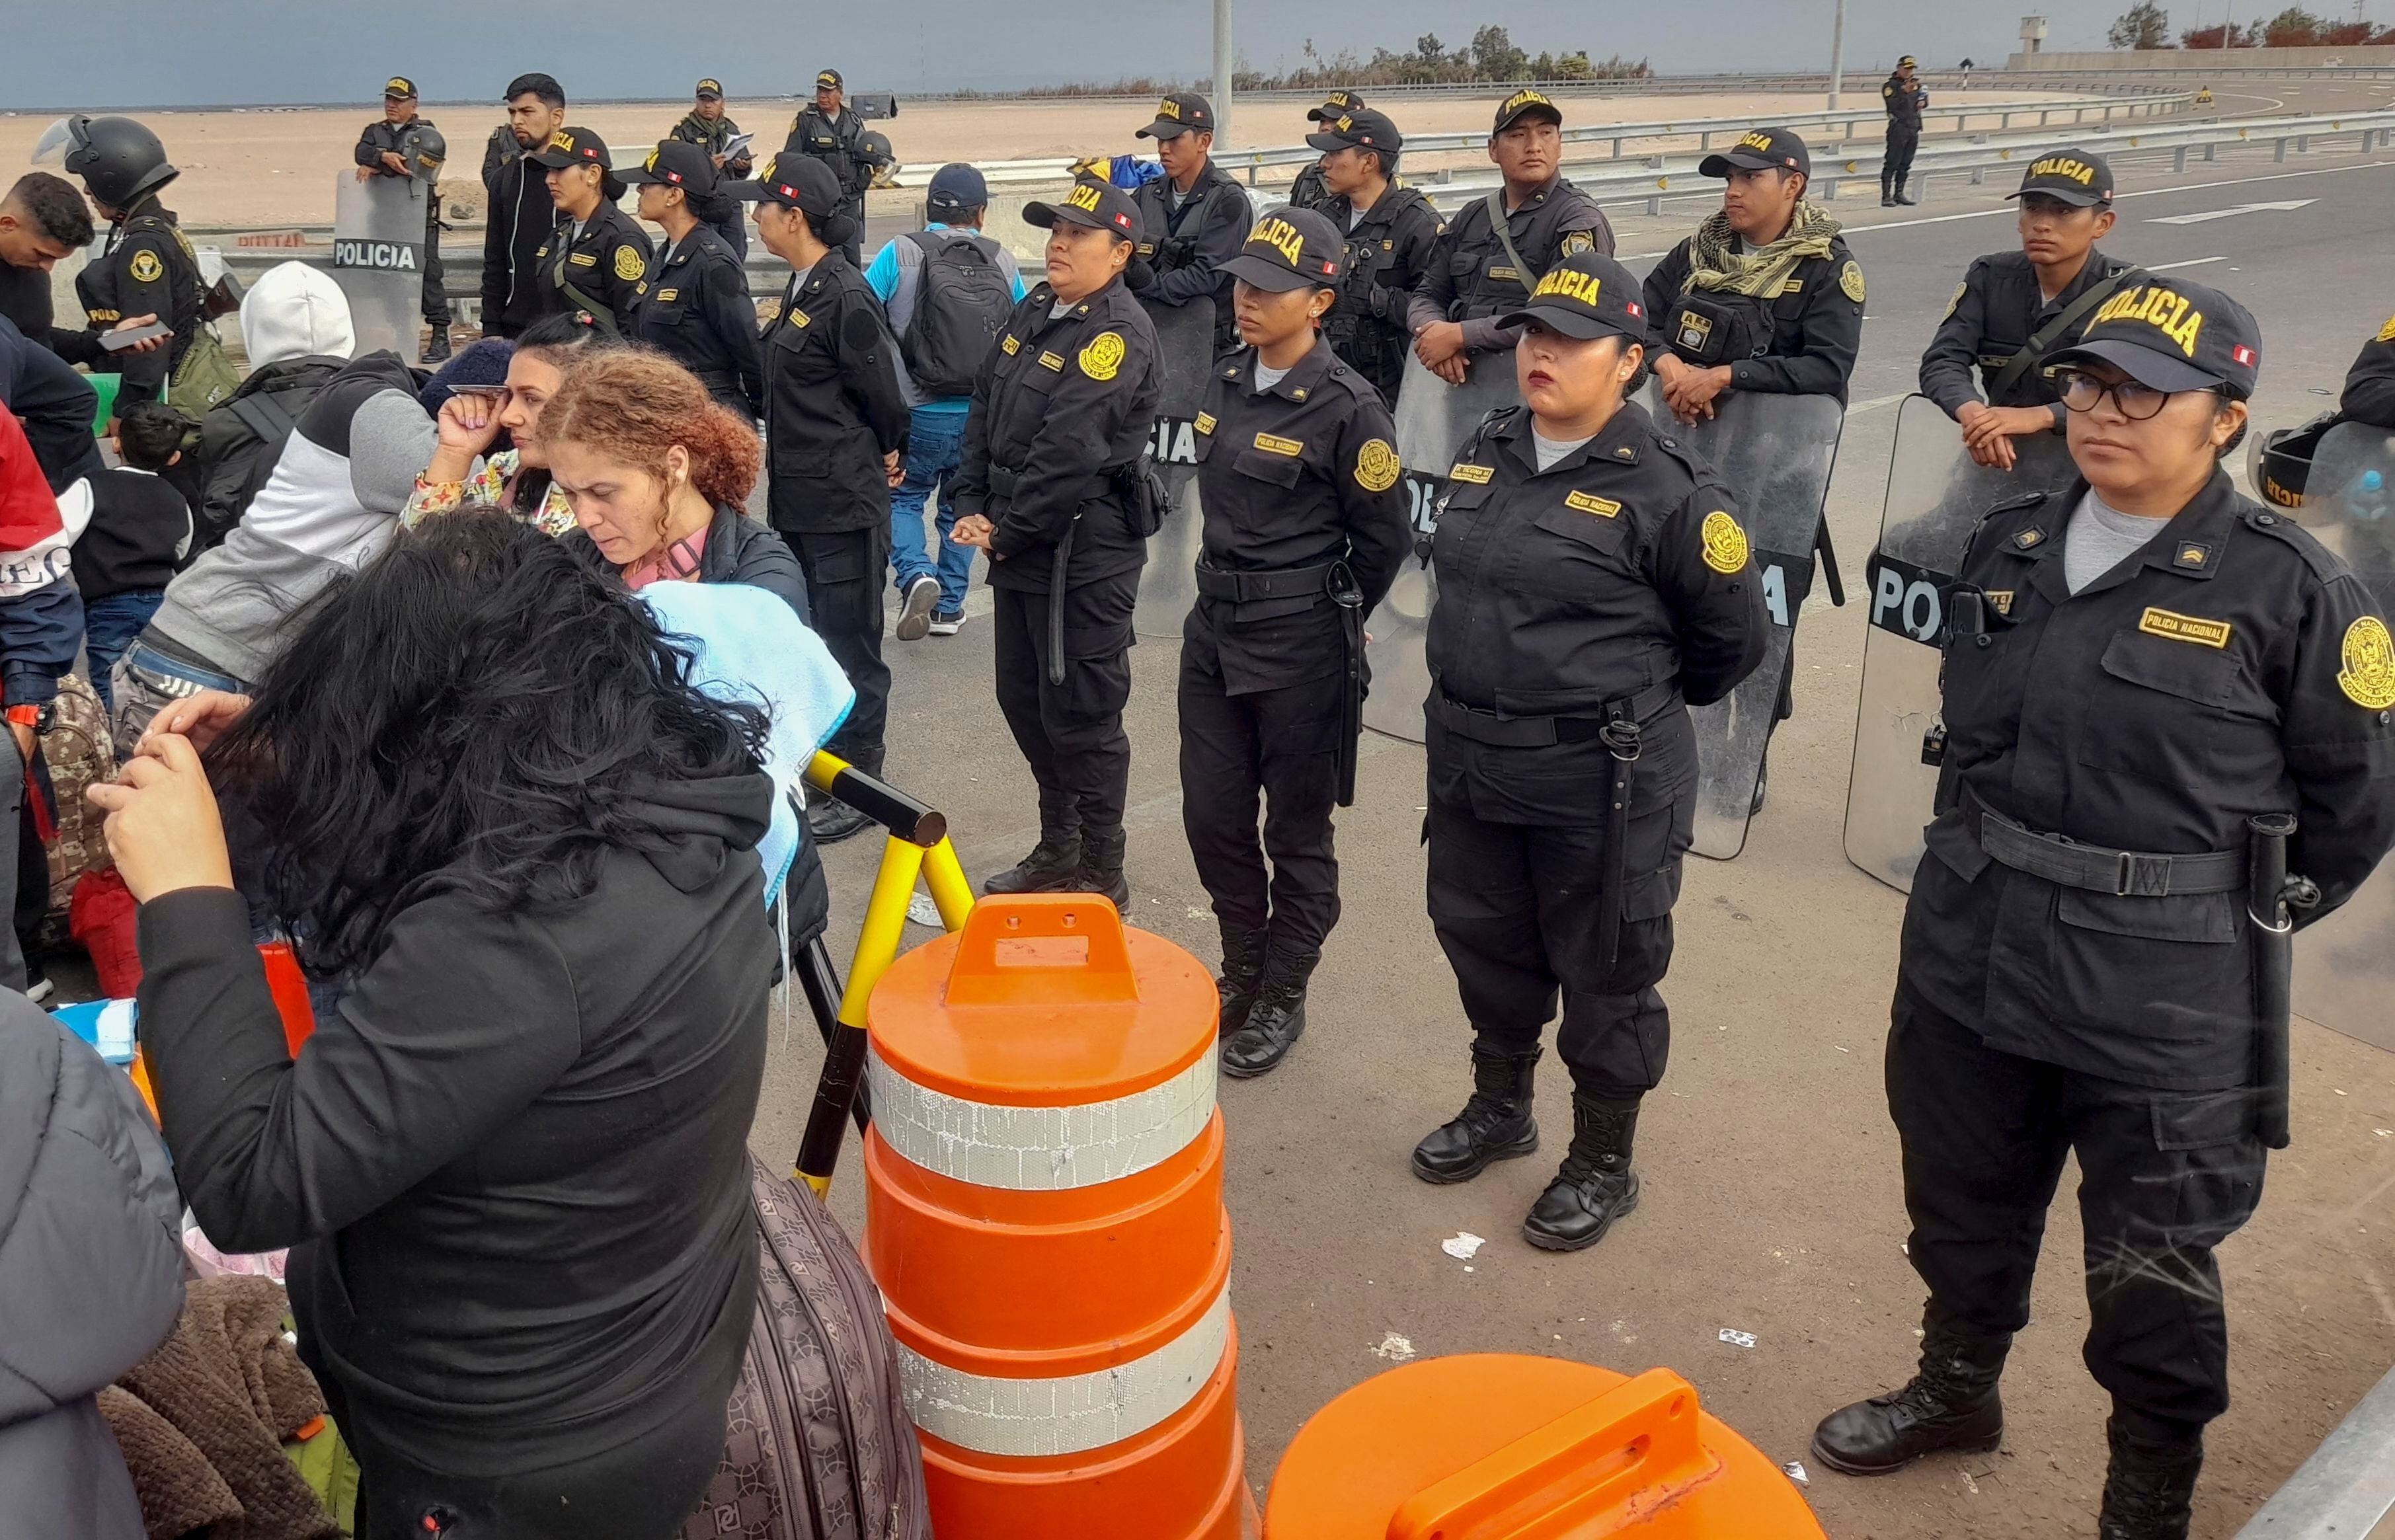 Perú en ‘estado de emergencia’: Blindó sus fronteras con militares ante llegada de migrantes